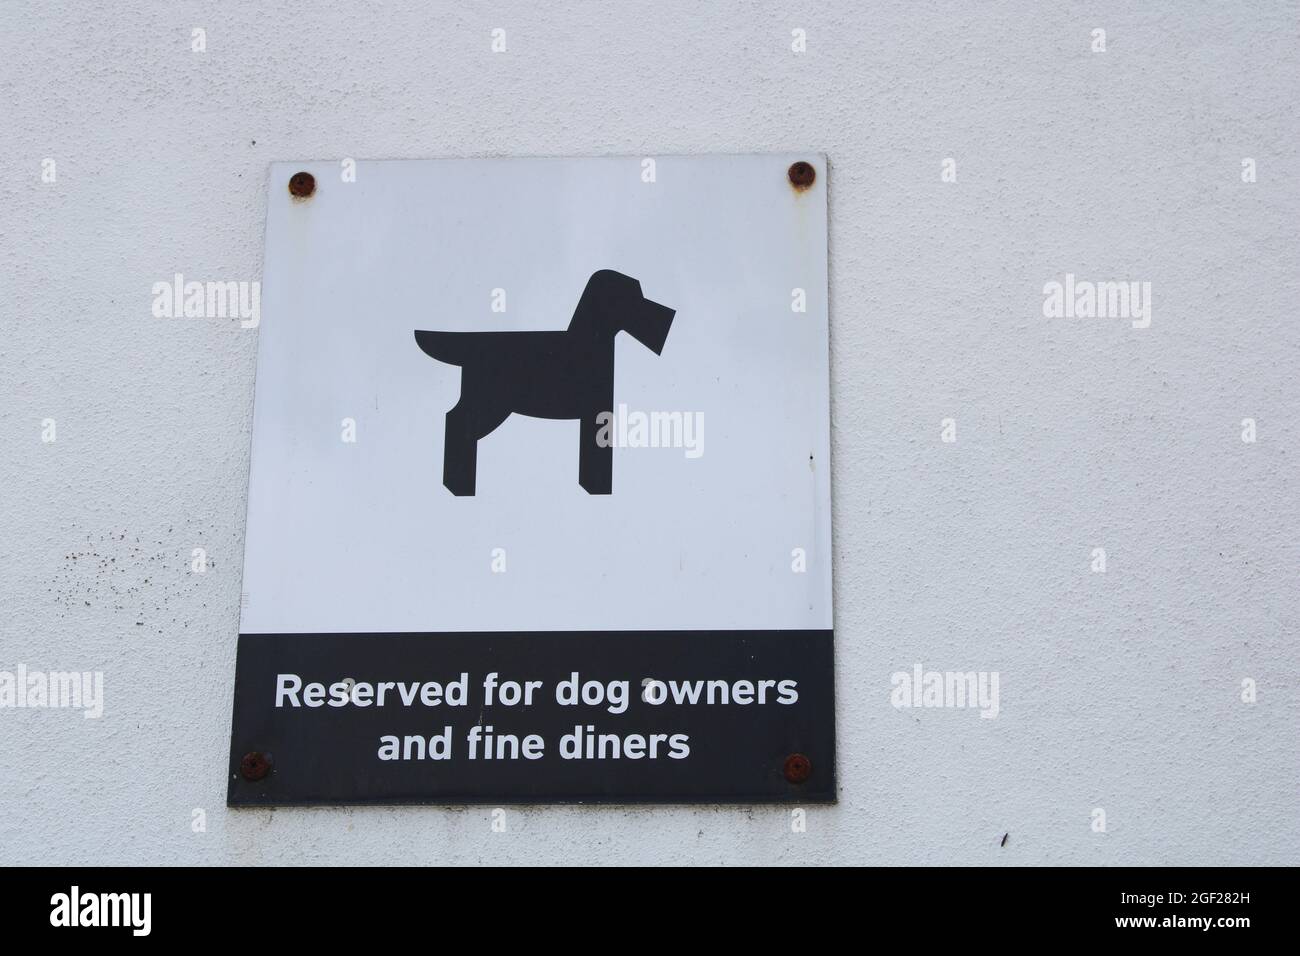 Silhouette Hundeschild Parkplatz reserviert für Hundebesitzer und feine Gäste auf weiß strukturierte Wand mit Kopieplatz. Hundefreundliches Geschäftskonzept Stockfoto